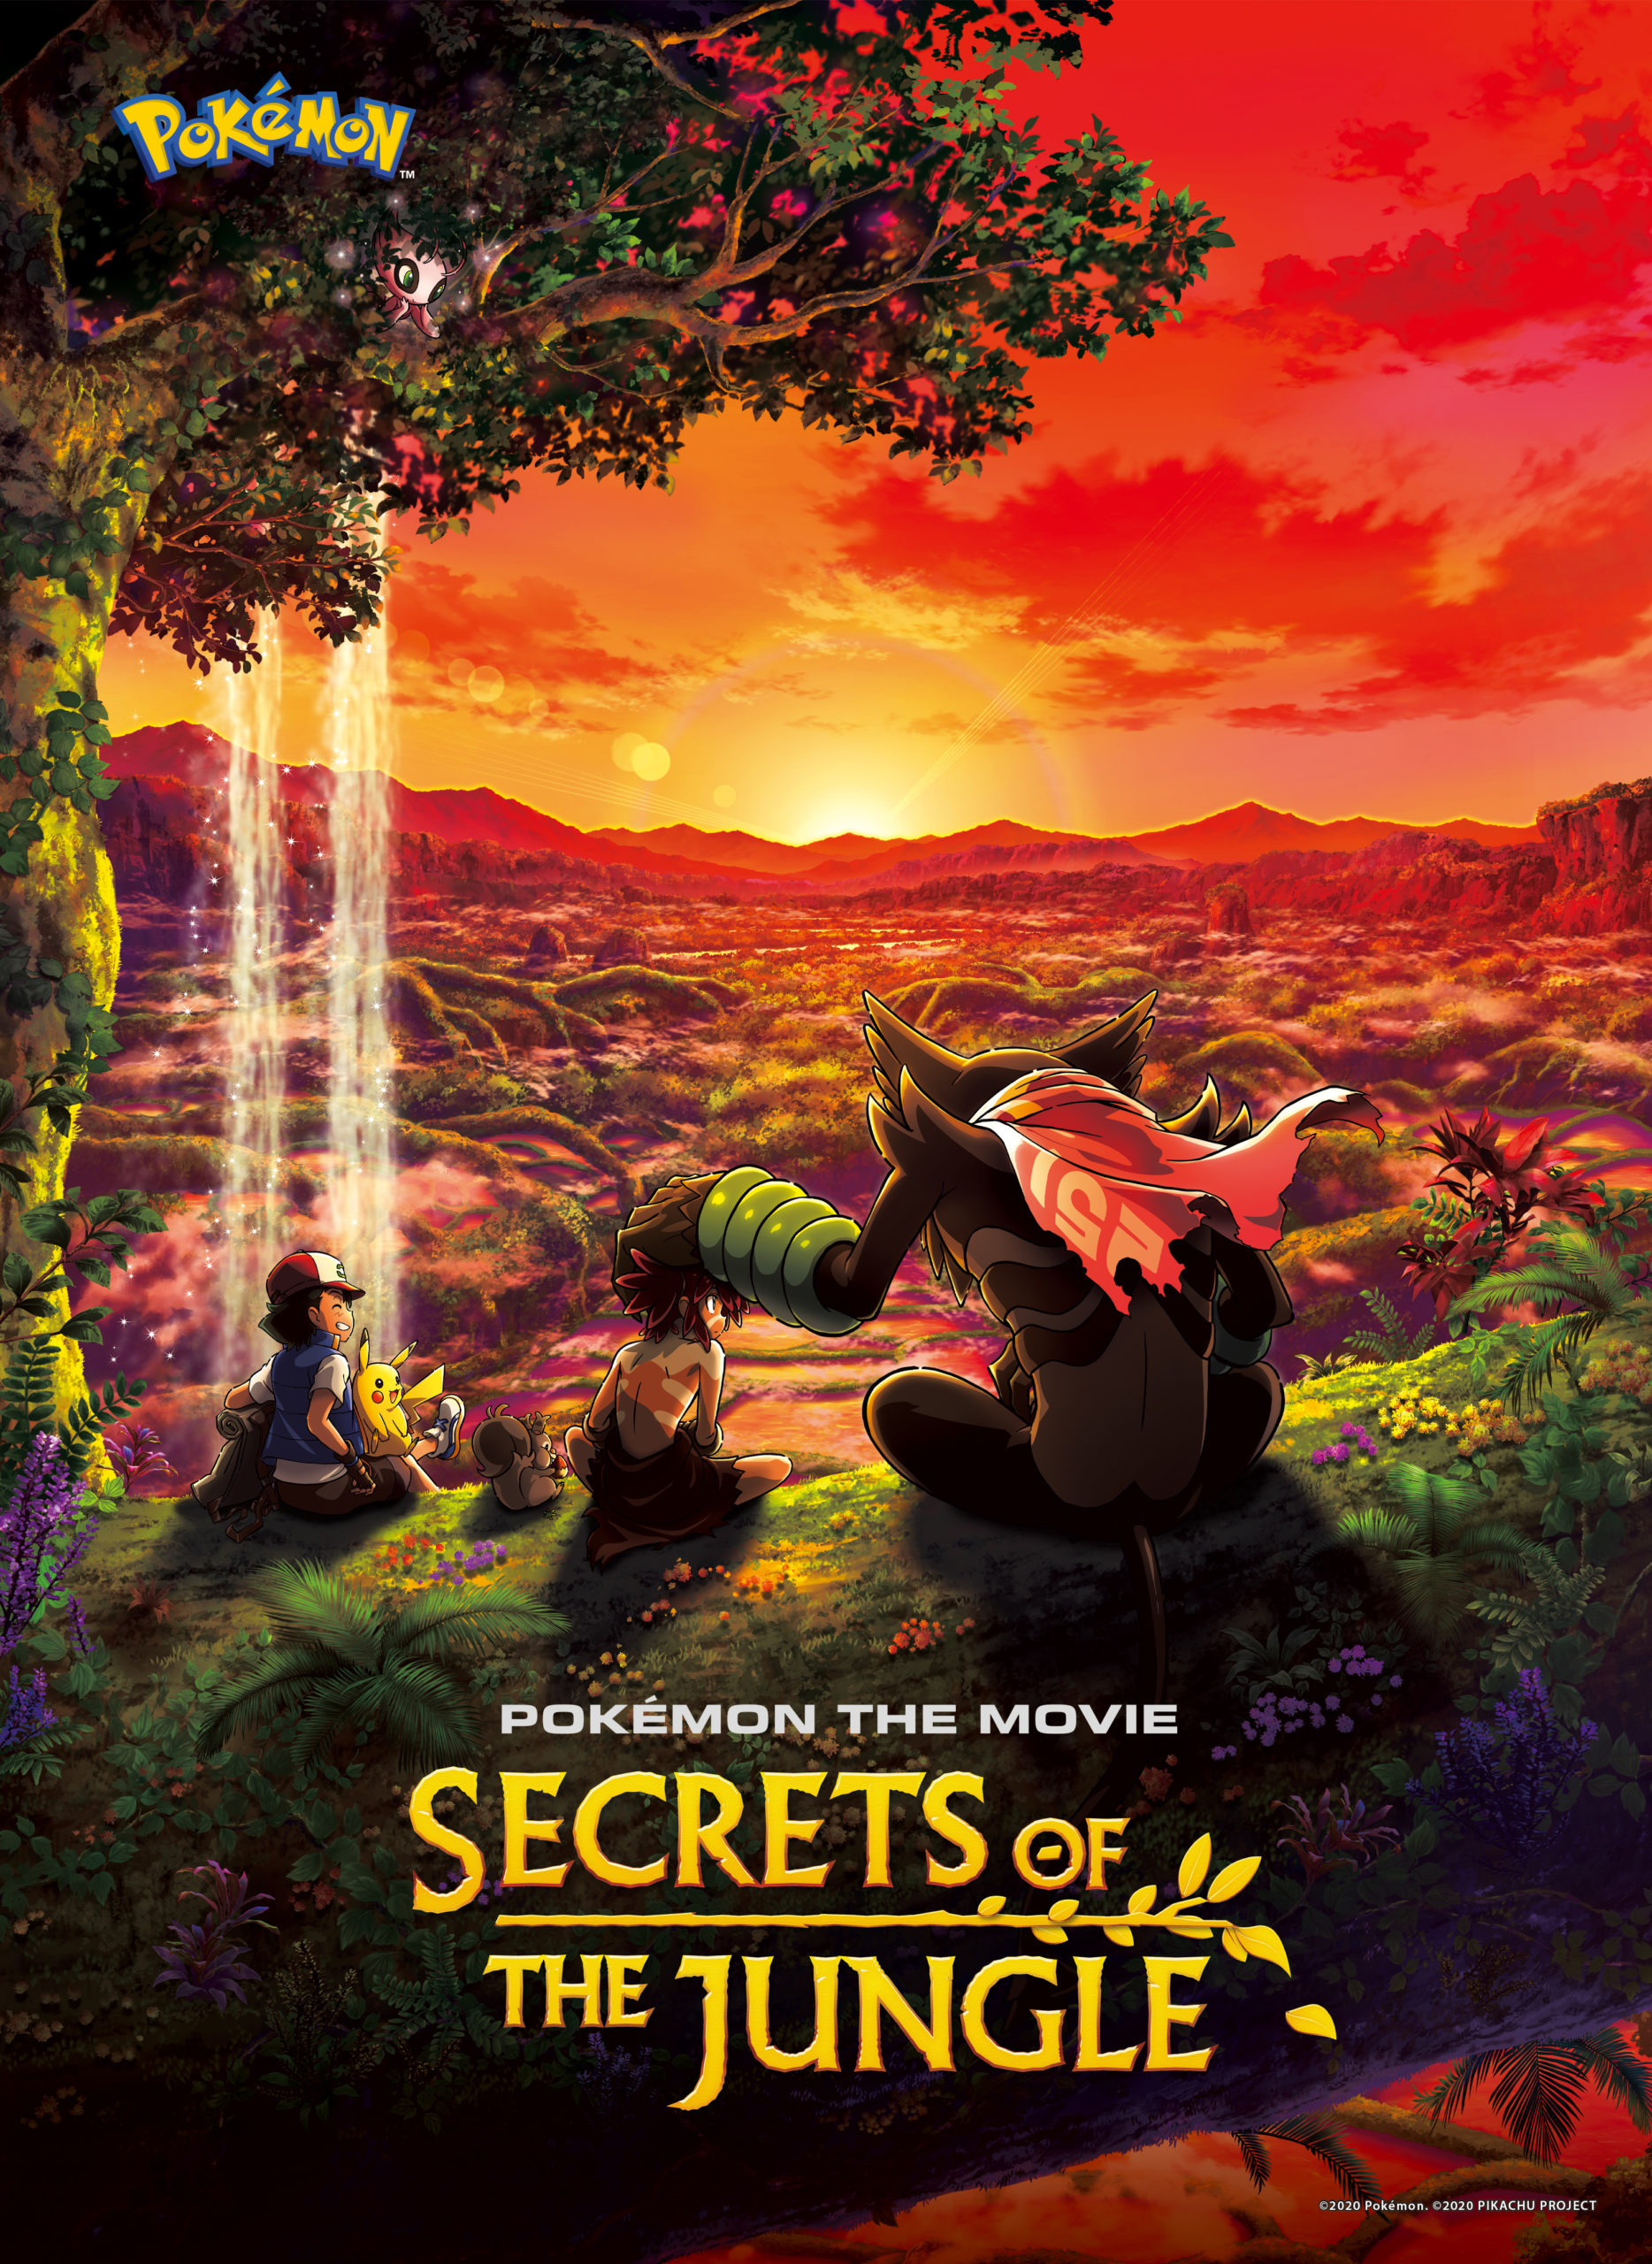 Pokemon the Movie: Secrets of the Jungle